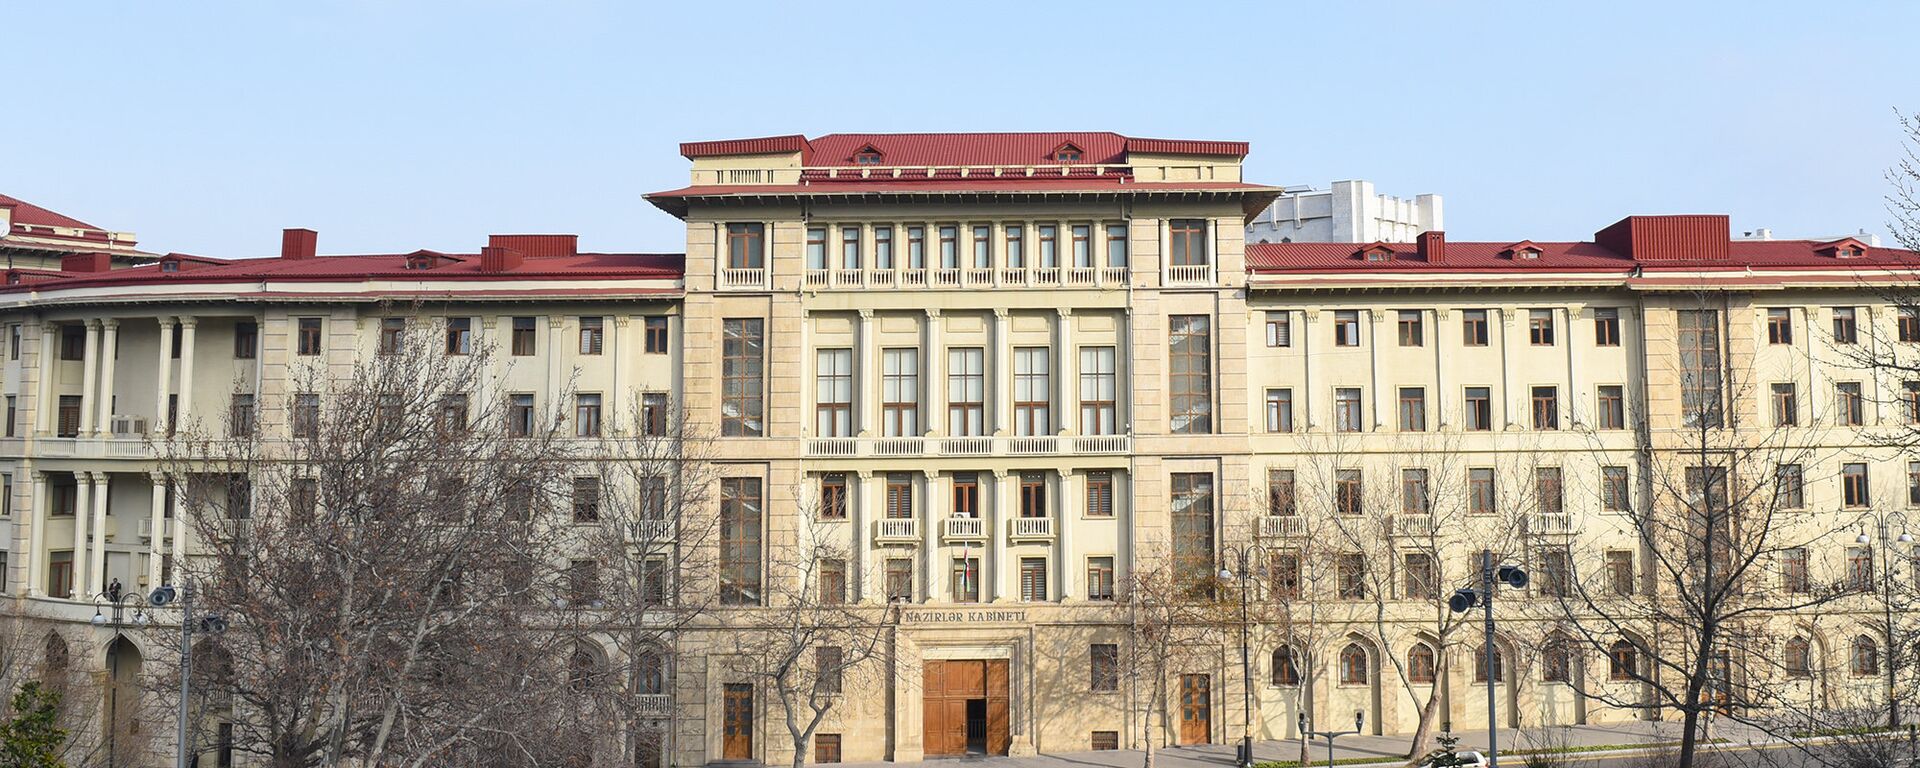 Кабинет министров Азербайджанской Республики - Sputnik Azərbaycan, 1920, 01.03.2019